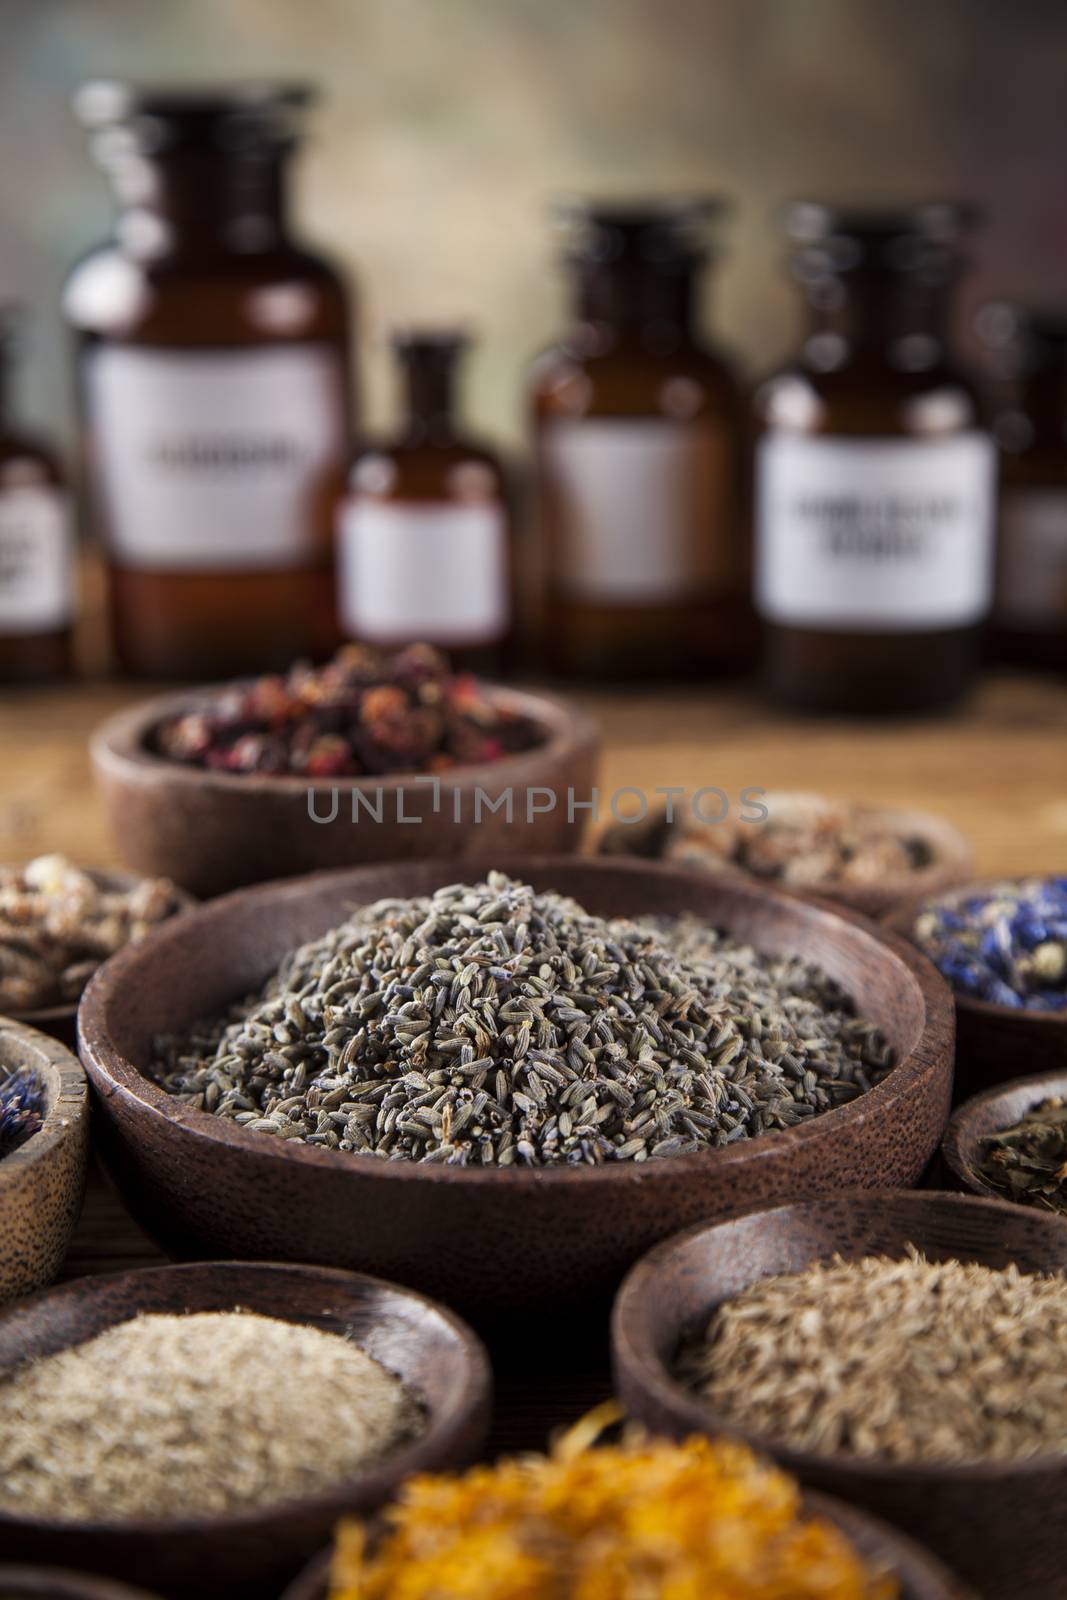 Herbal medicine on wooden desk background by JanPietruszka